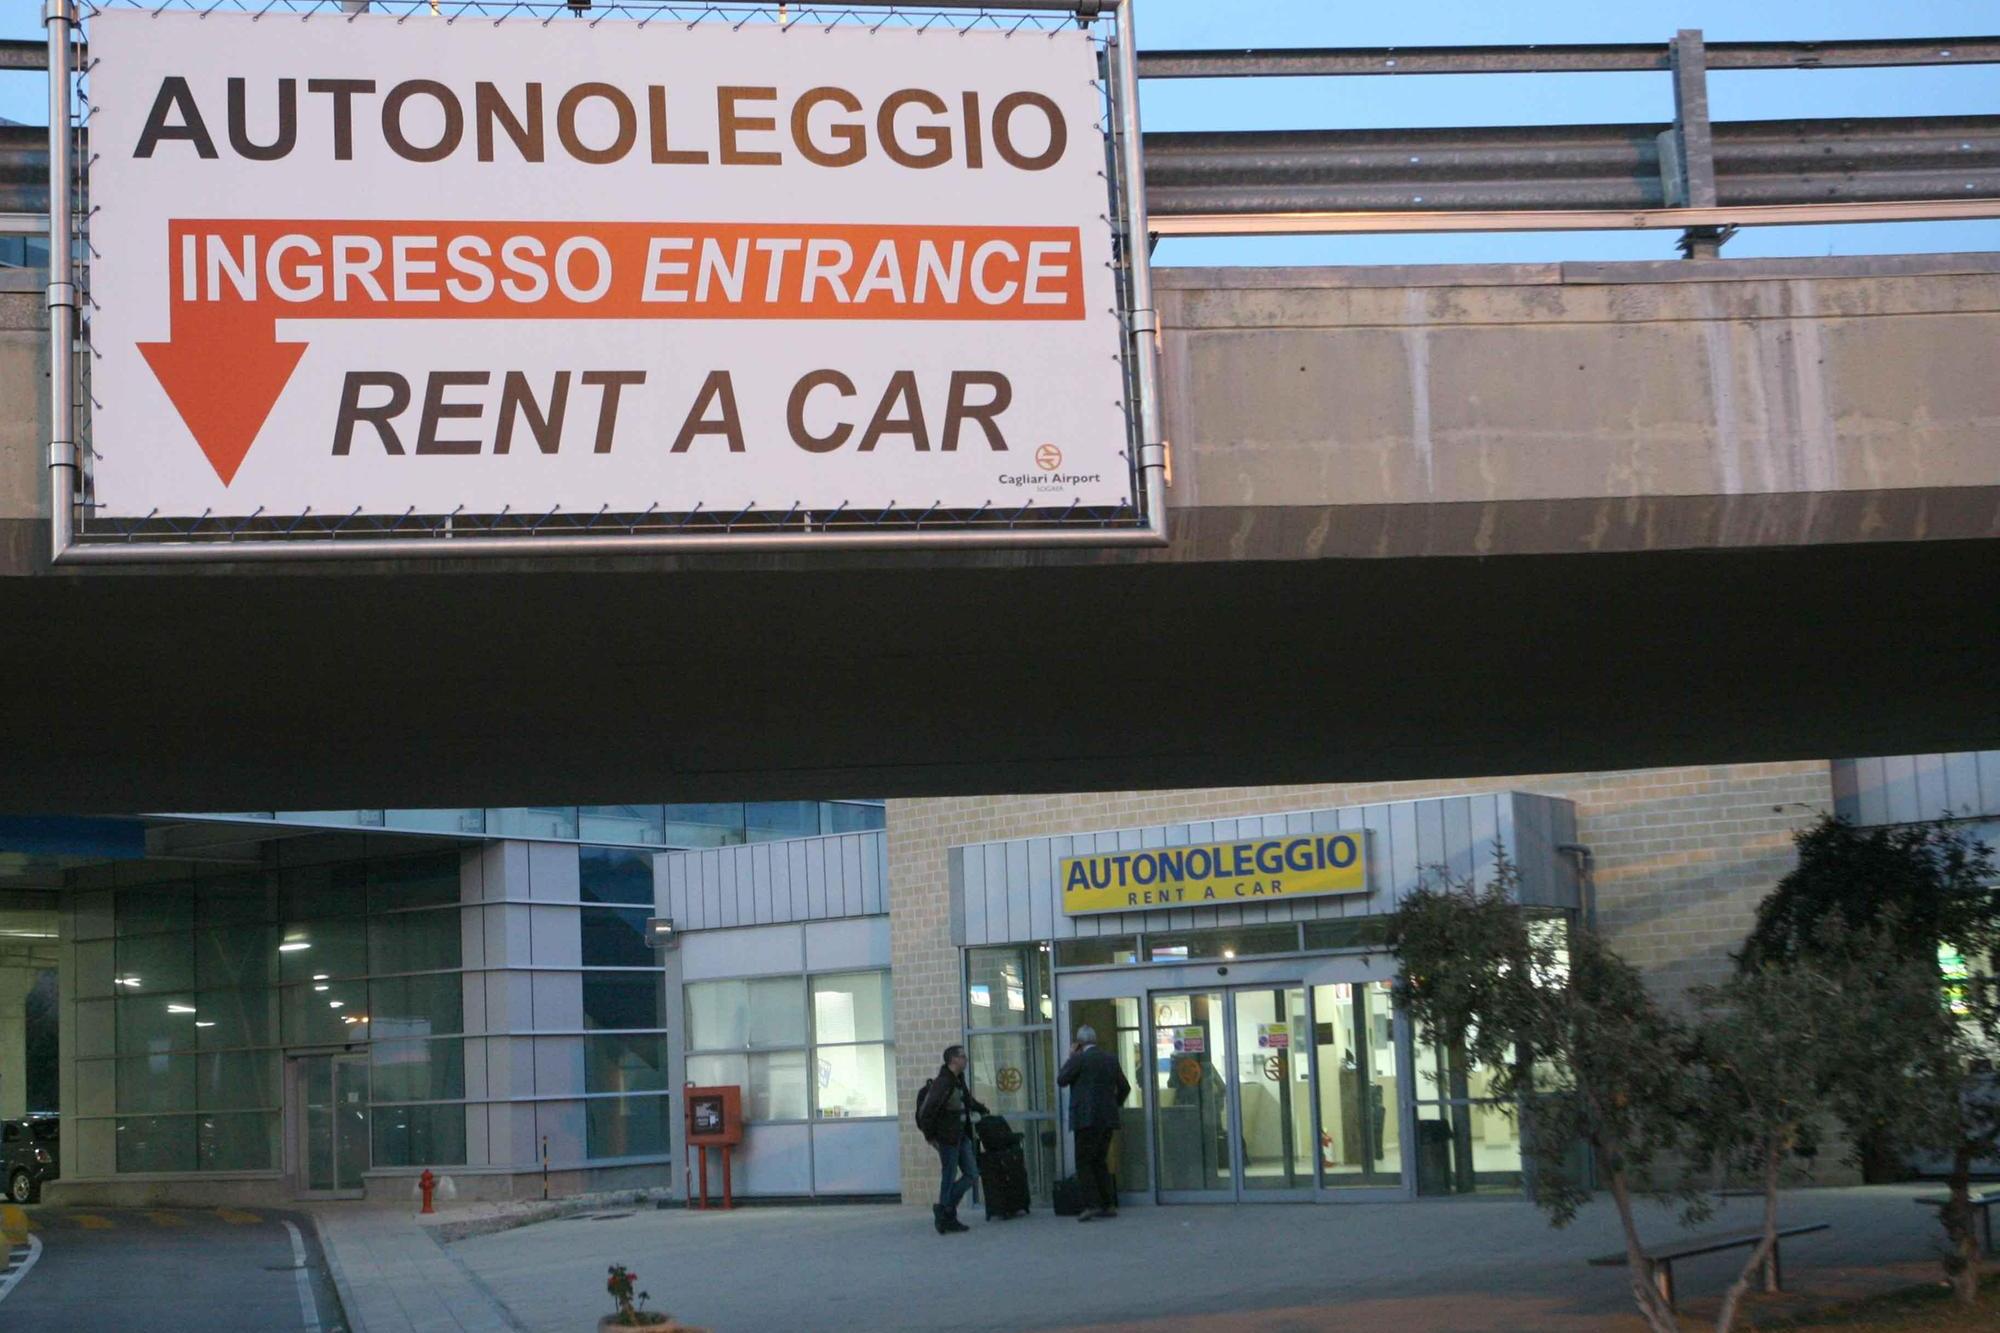 Autonoleggi costosissimi d’estate: in Sardegna i prezzi più alti d’Italia